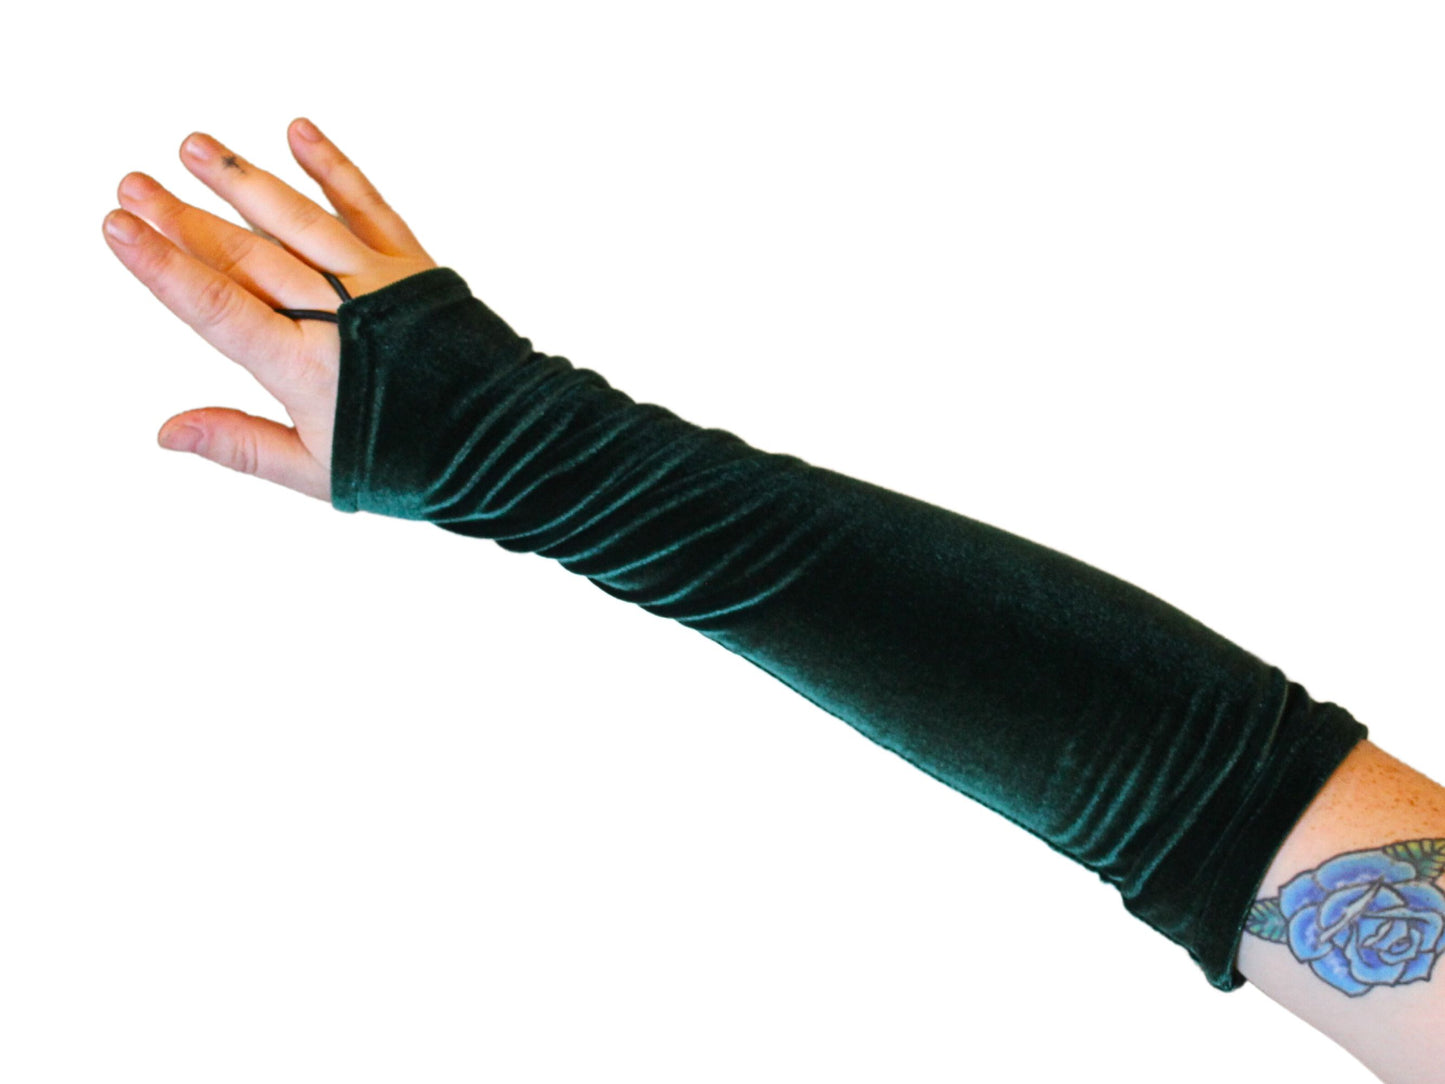 The VM Long Velvet Pointe Gloves